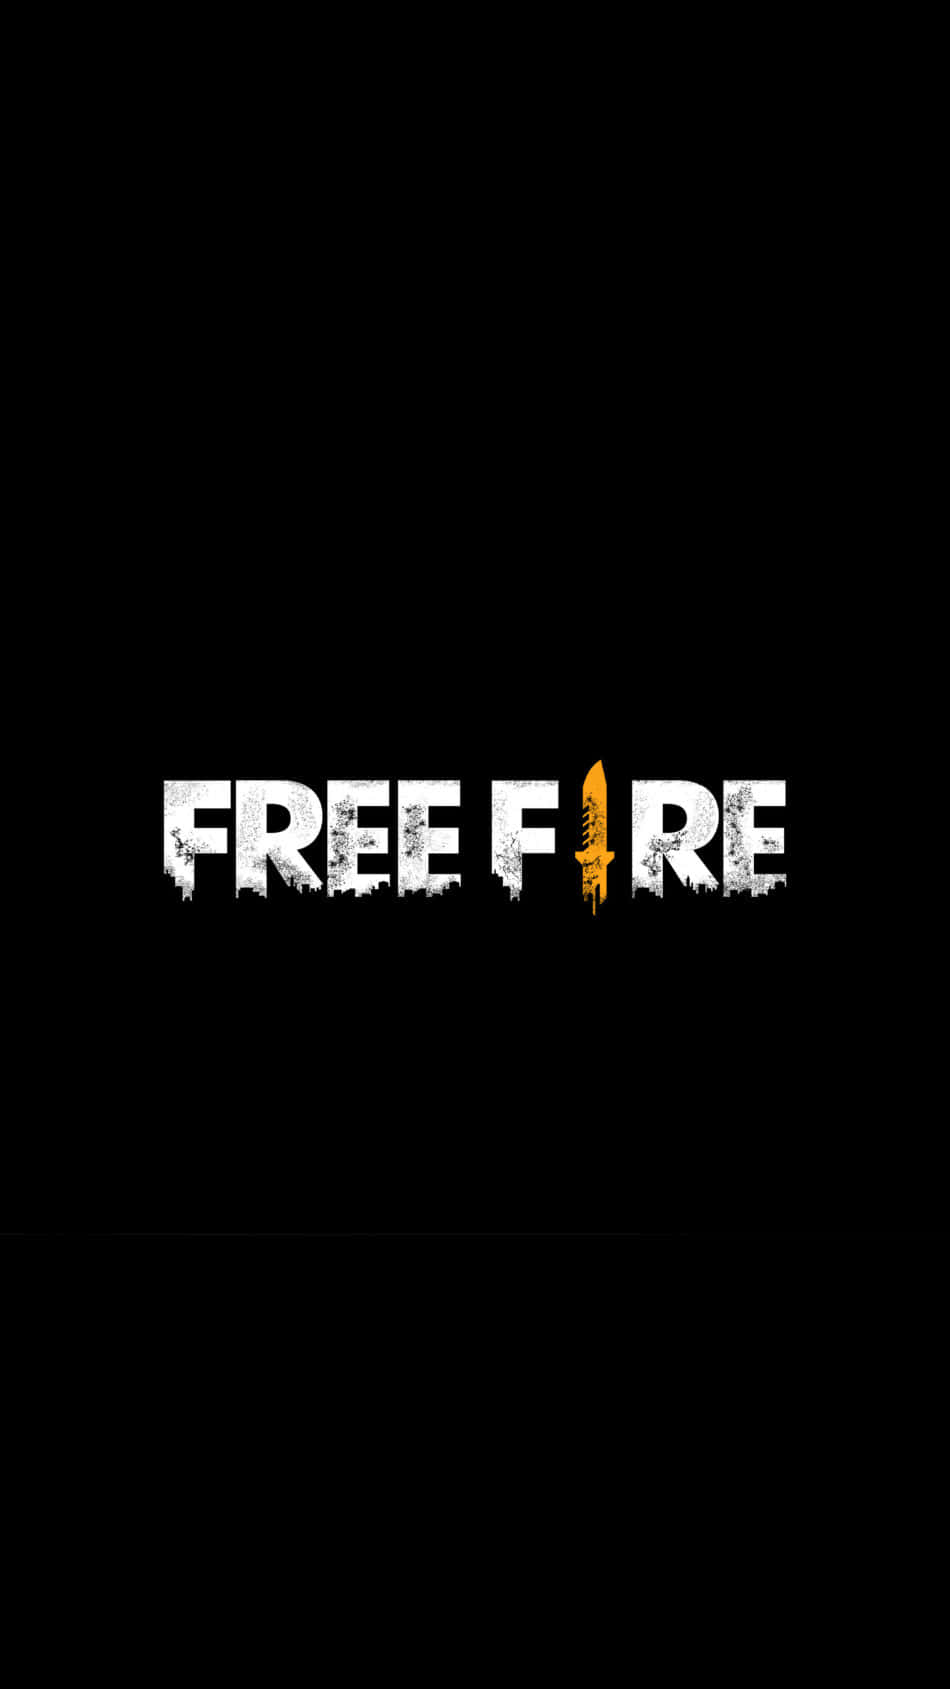 Etskinnende Gult Free Fire-logo Omridset I Sort.